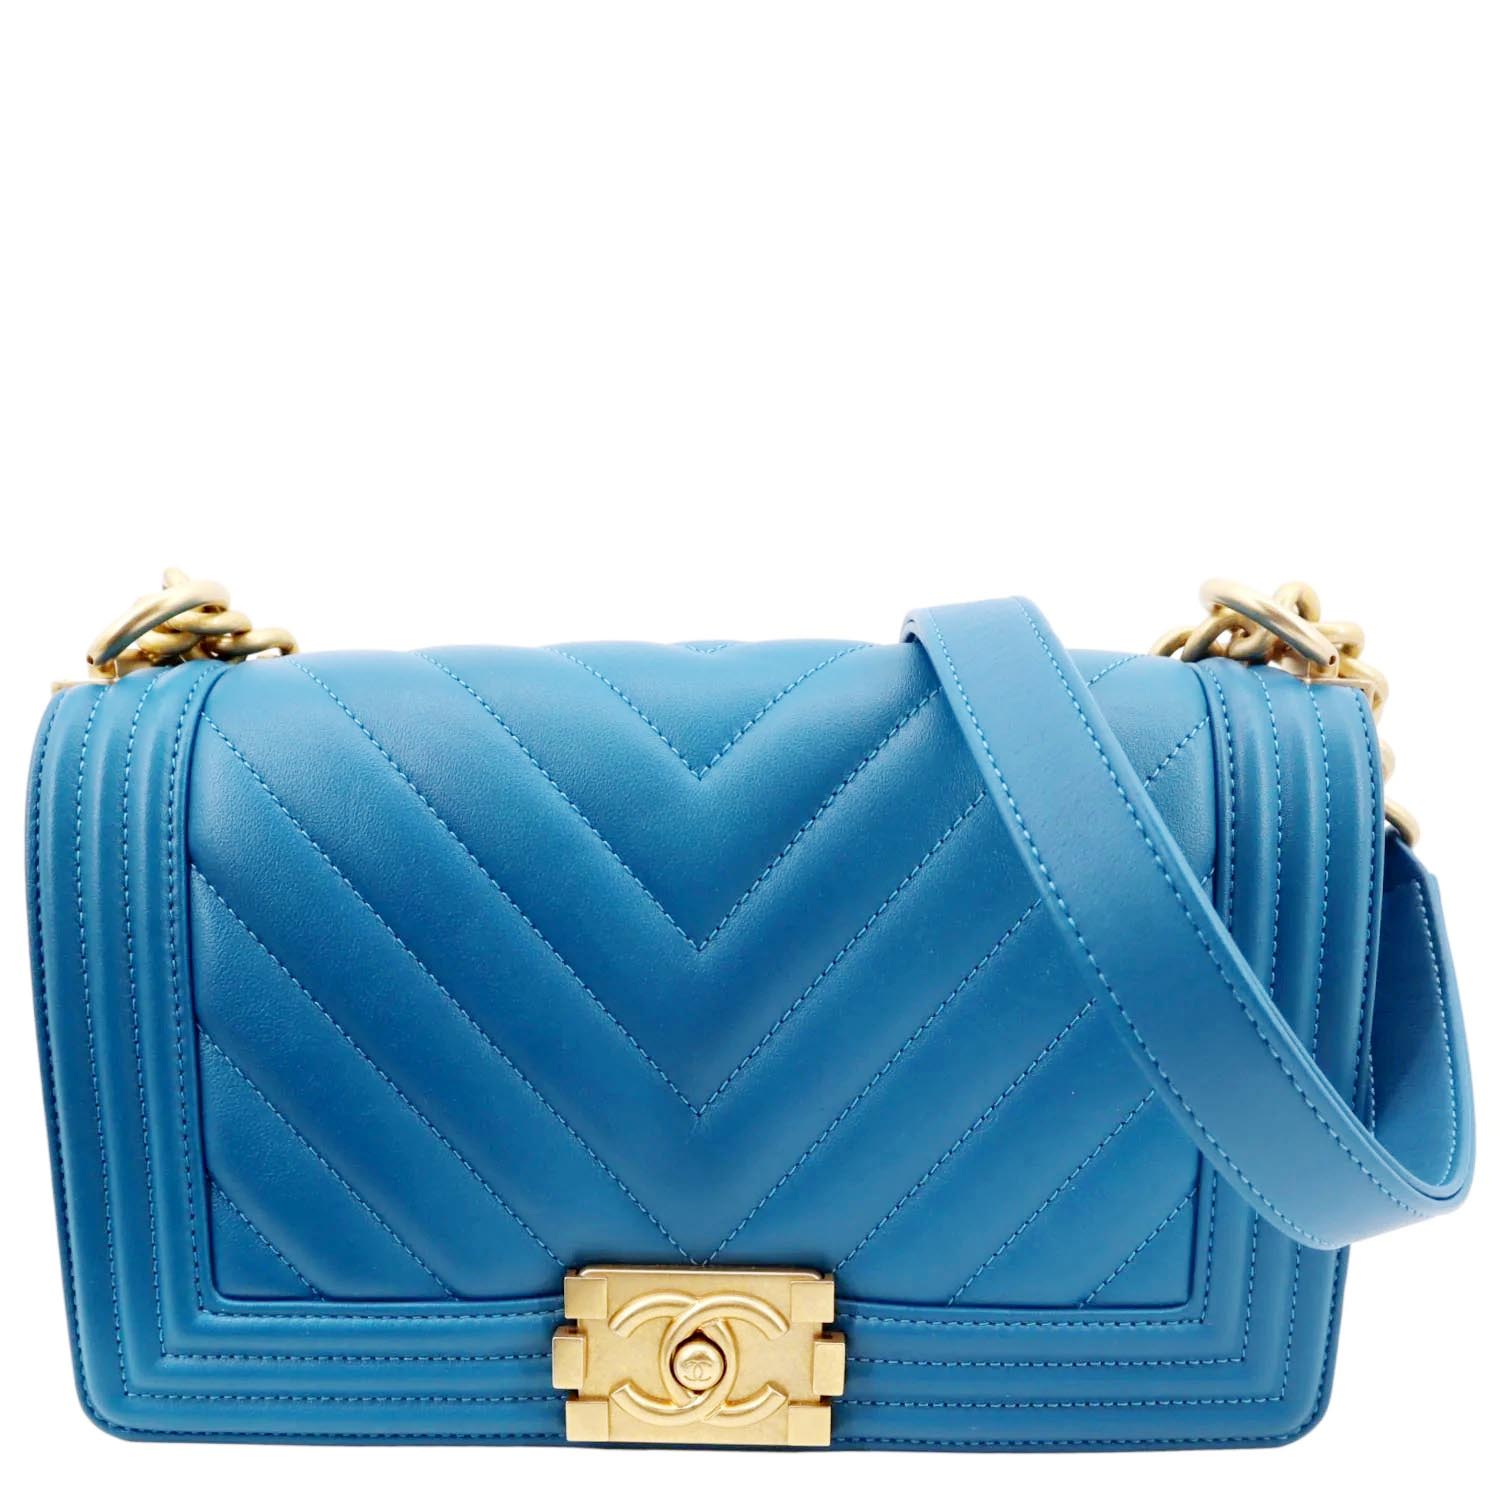 Chanel Blue Medium Boy Bag